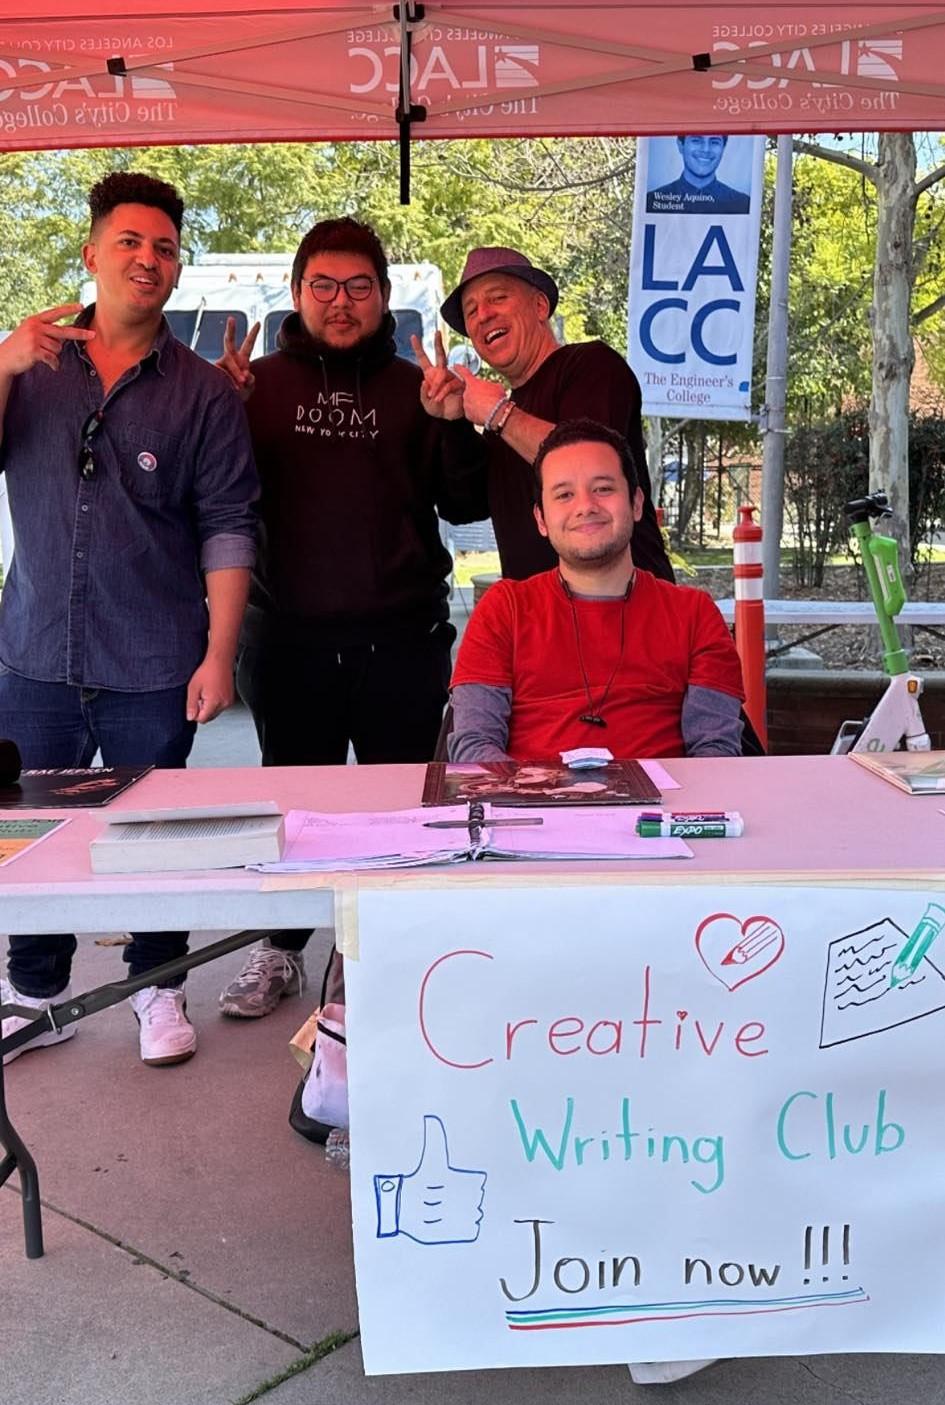 Creative Writing Club members at a club fair